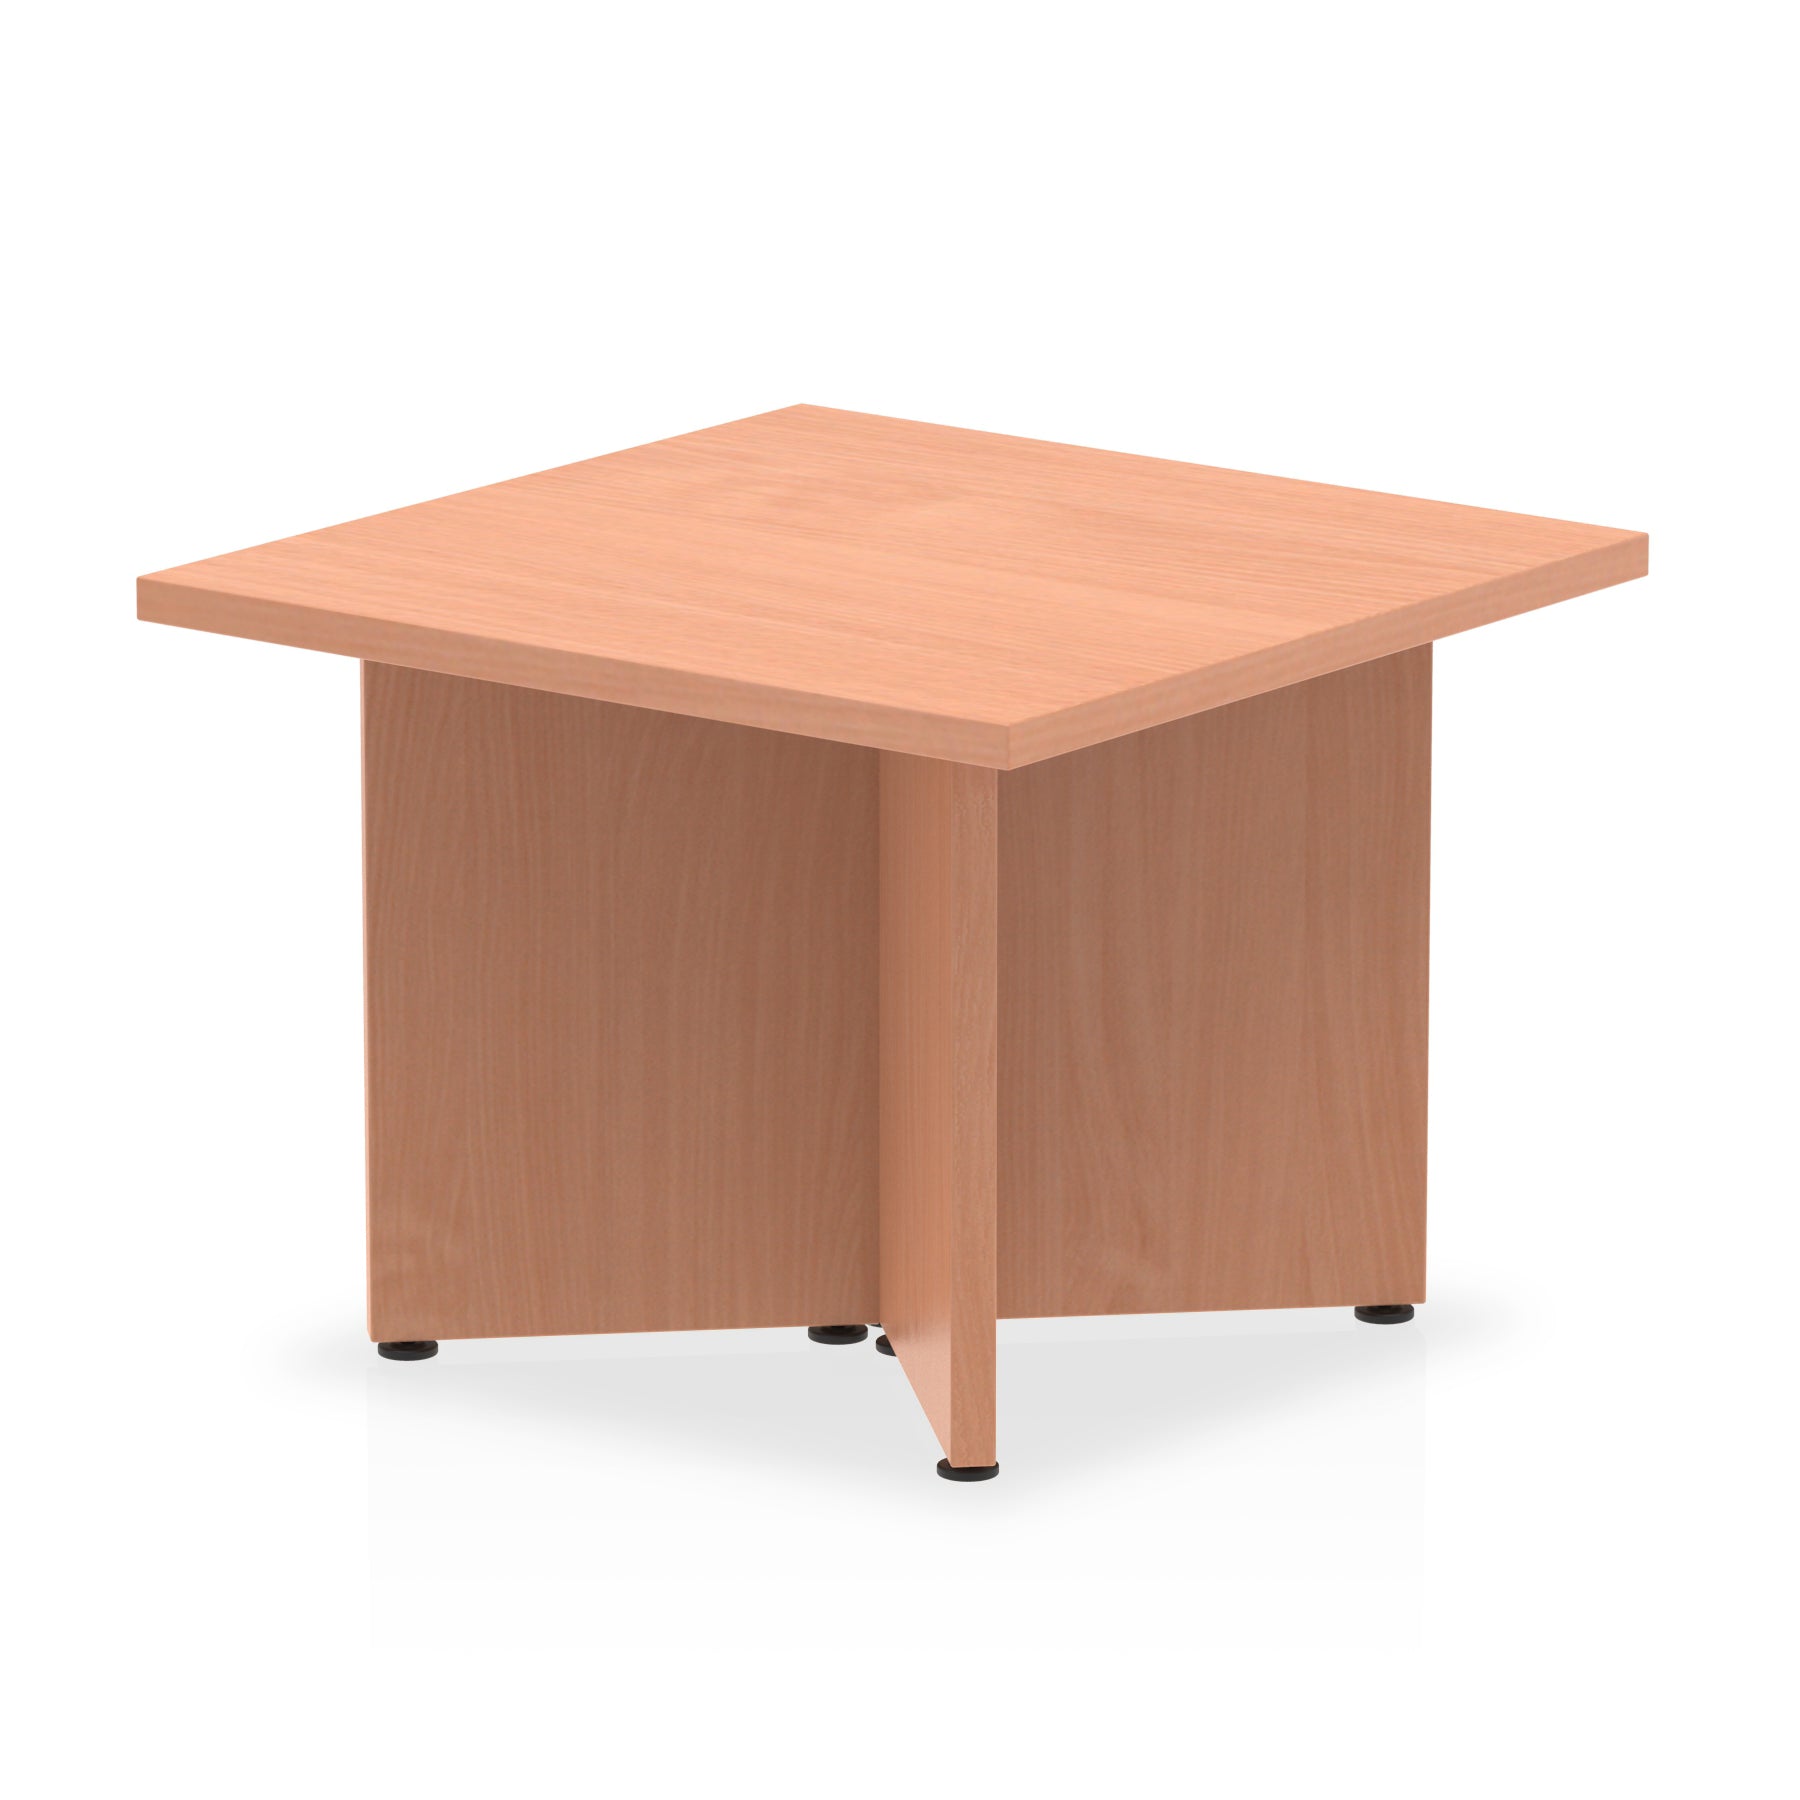 Photos - Dining Table Dynamic Office Solutions Impulse Coffee Table Arrowhead Leg I003275 